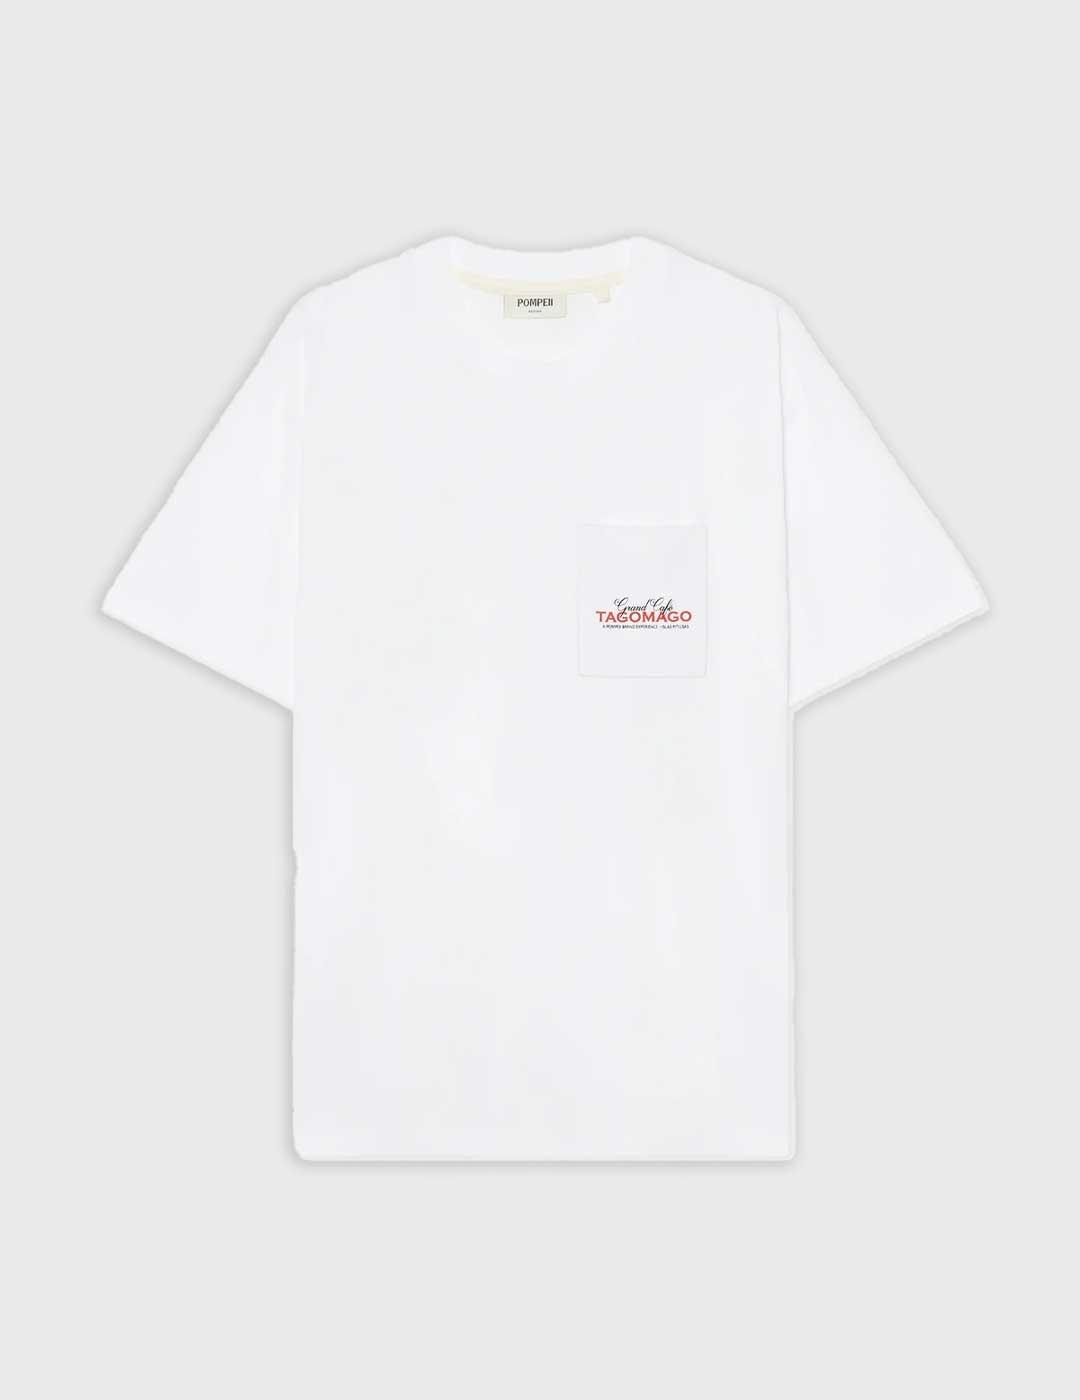 Camiseta Pompeii Brand Café Tomago blanca para hombre